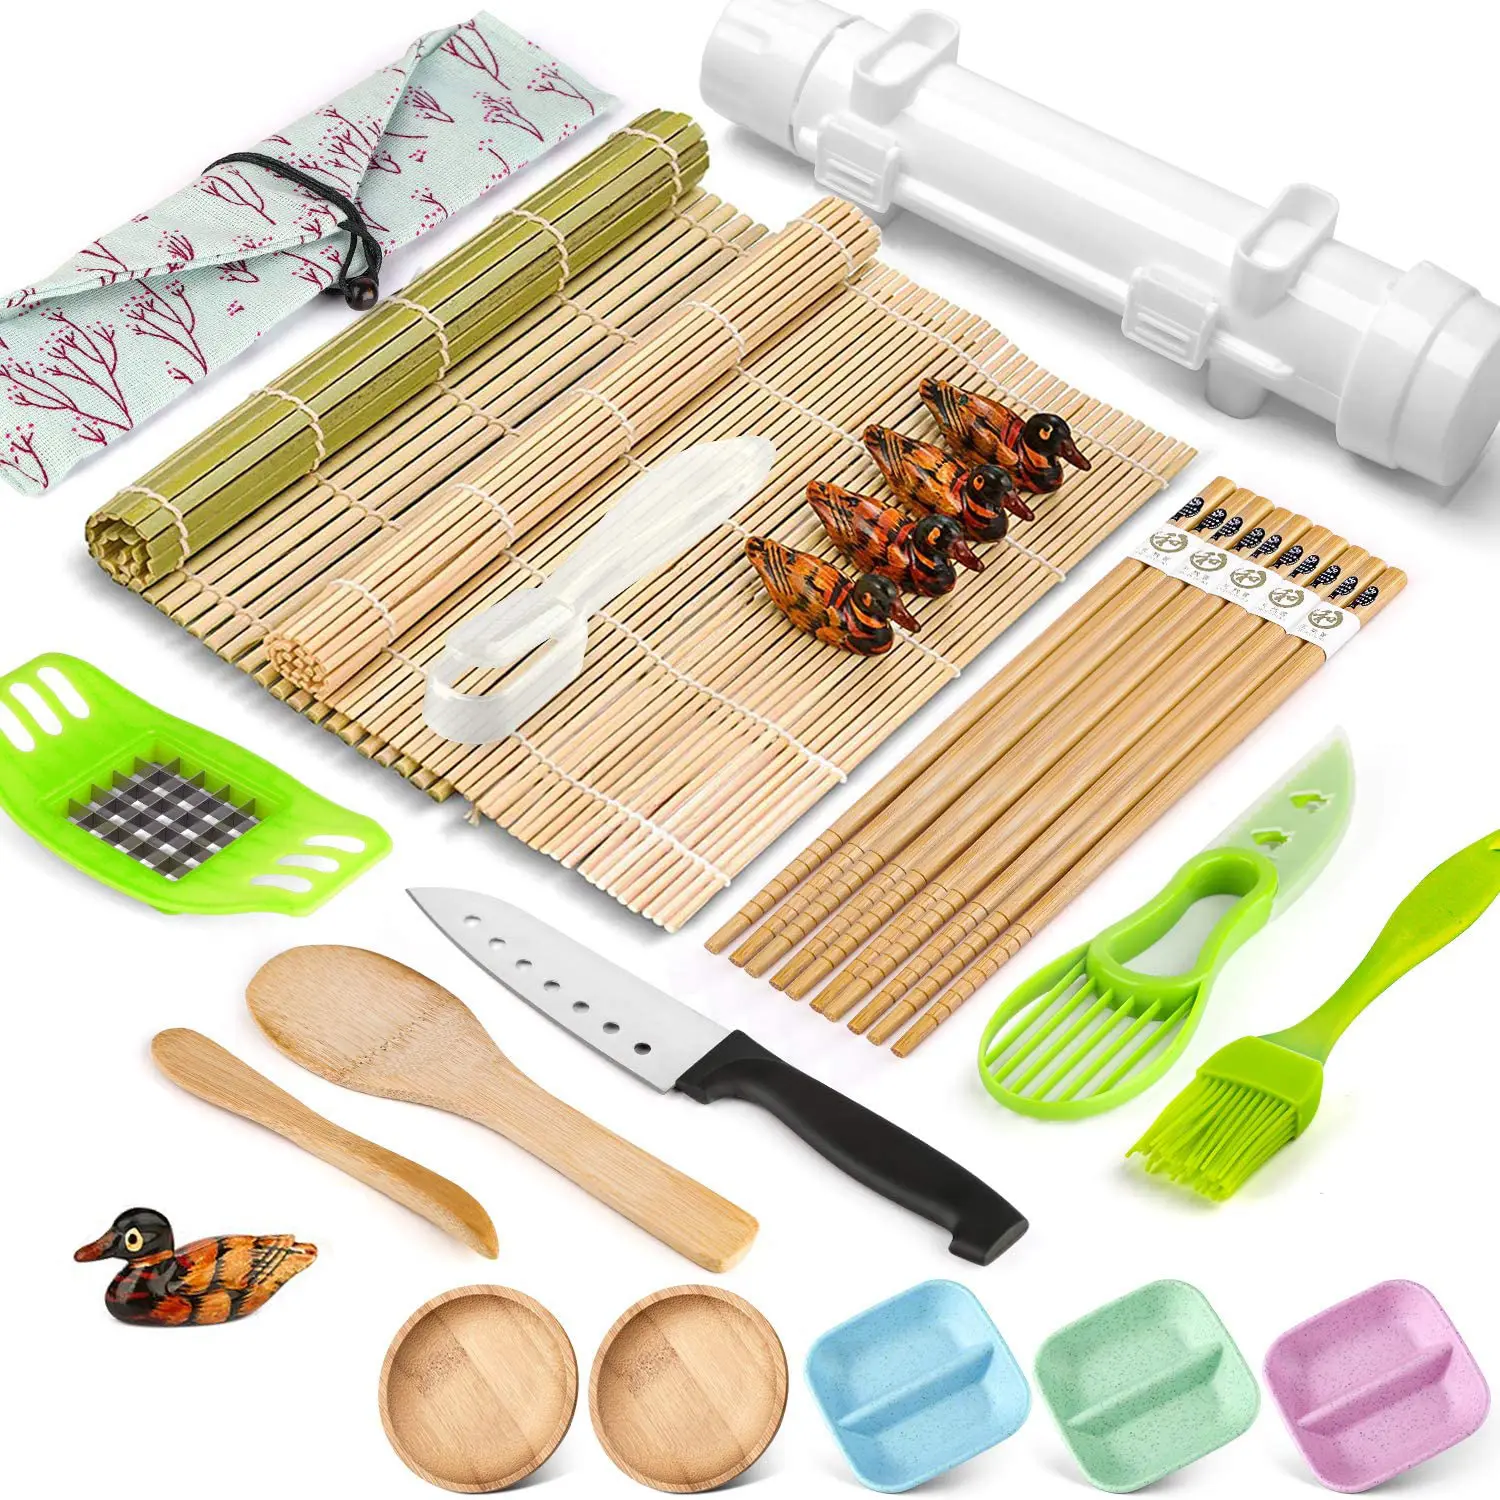 20 в 1 роликовый набор для суши-базуки с поварами, бамбуковые коврики, роликовые формы для риса, коврики для суши